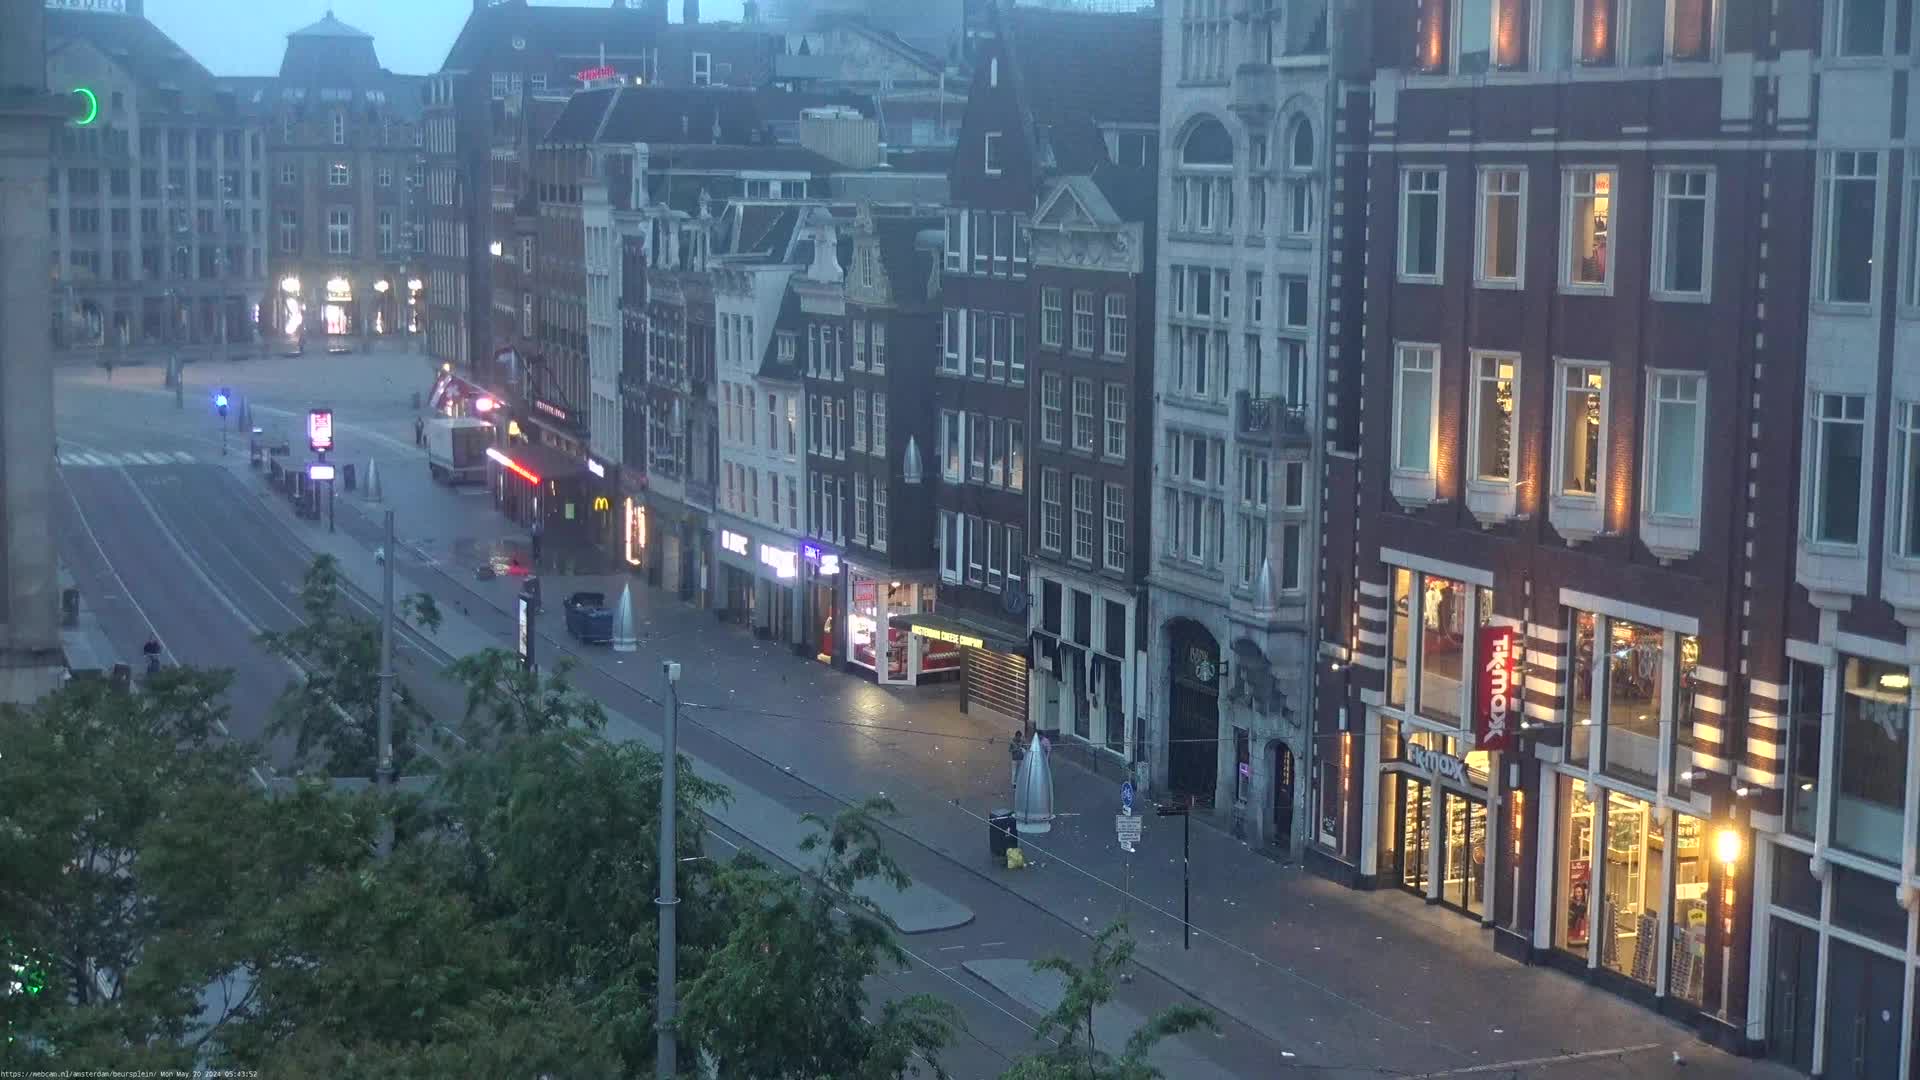 Amsterdam Mar. 06:03